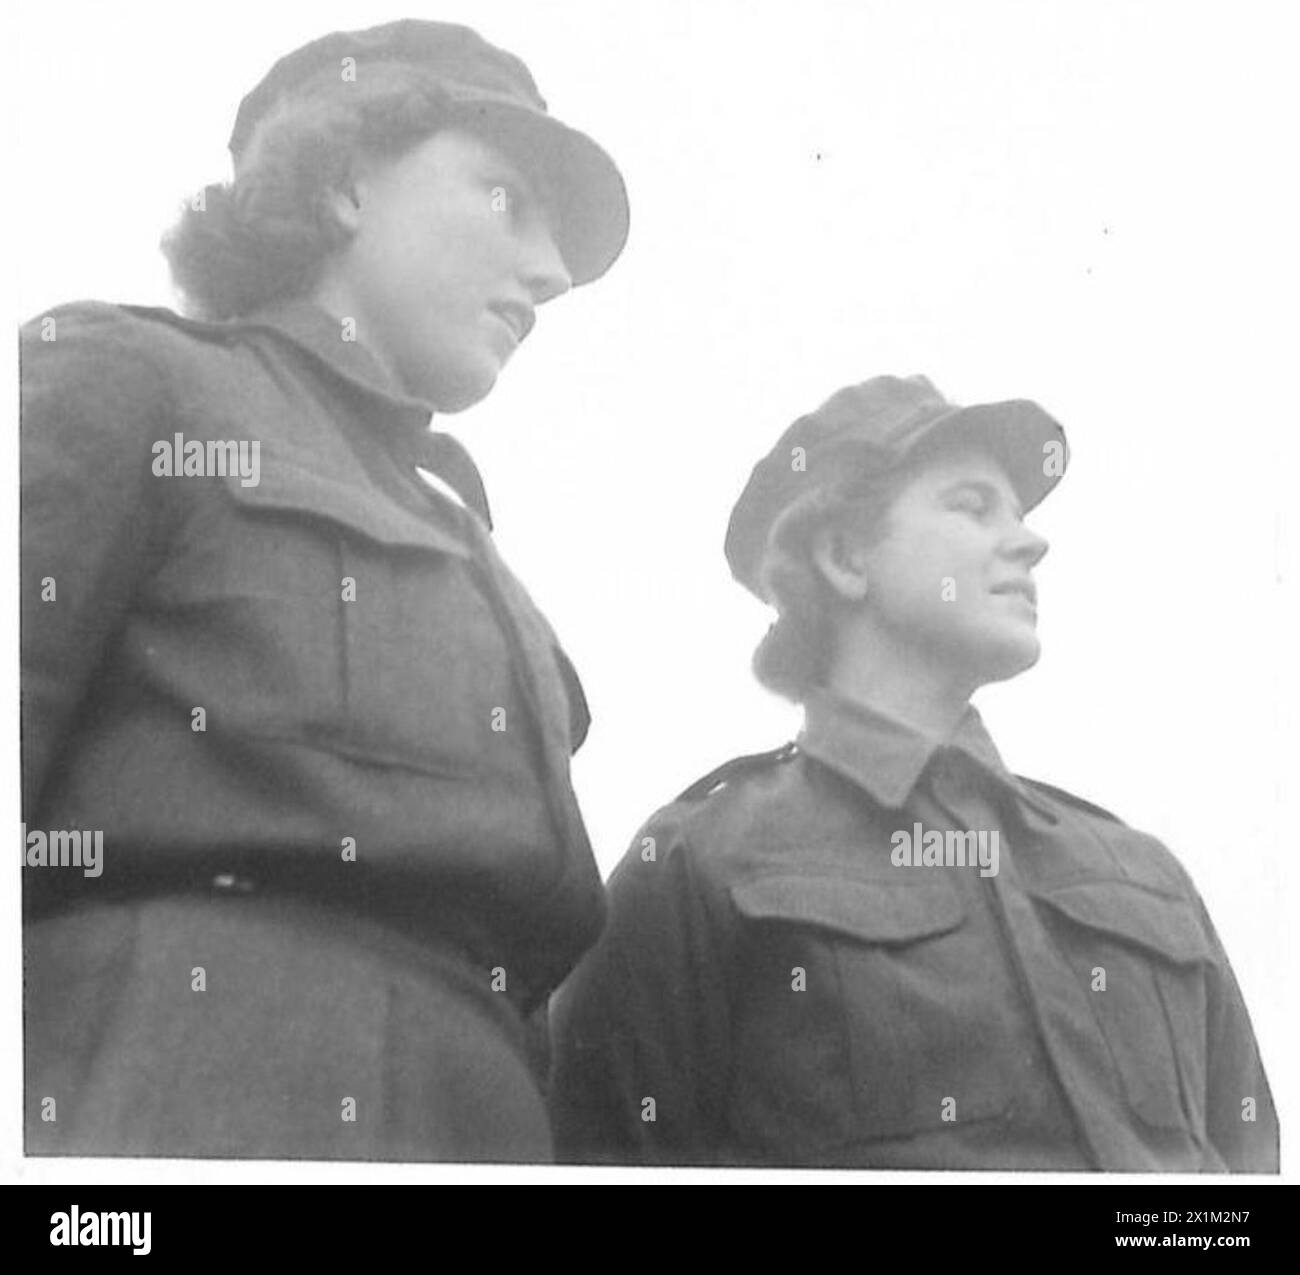 DU CHILI POUR REJOINDRE L'ATS - de gauche à droite : Ptes. Isabelle Trevena et Dora Charleworth photographiées dans un centre ATS de l'armée britannique Banque D'Images